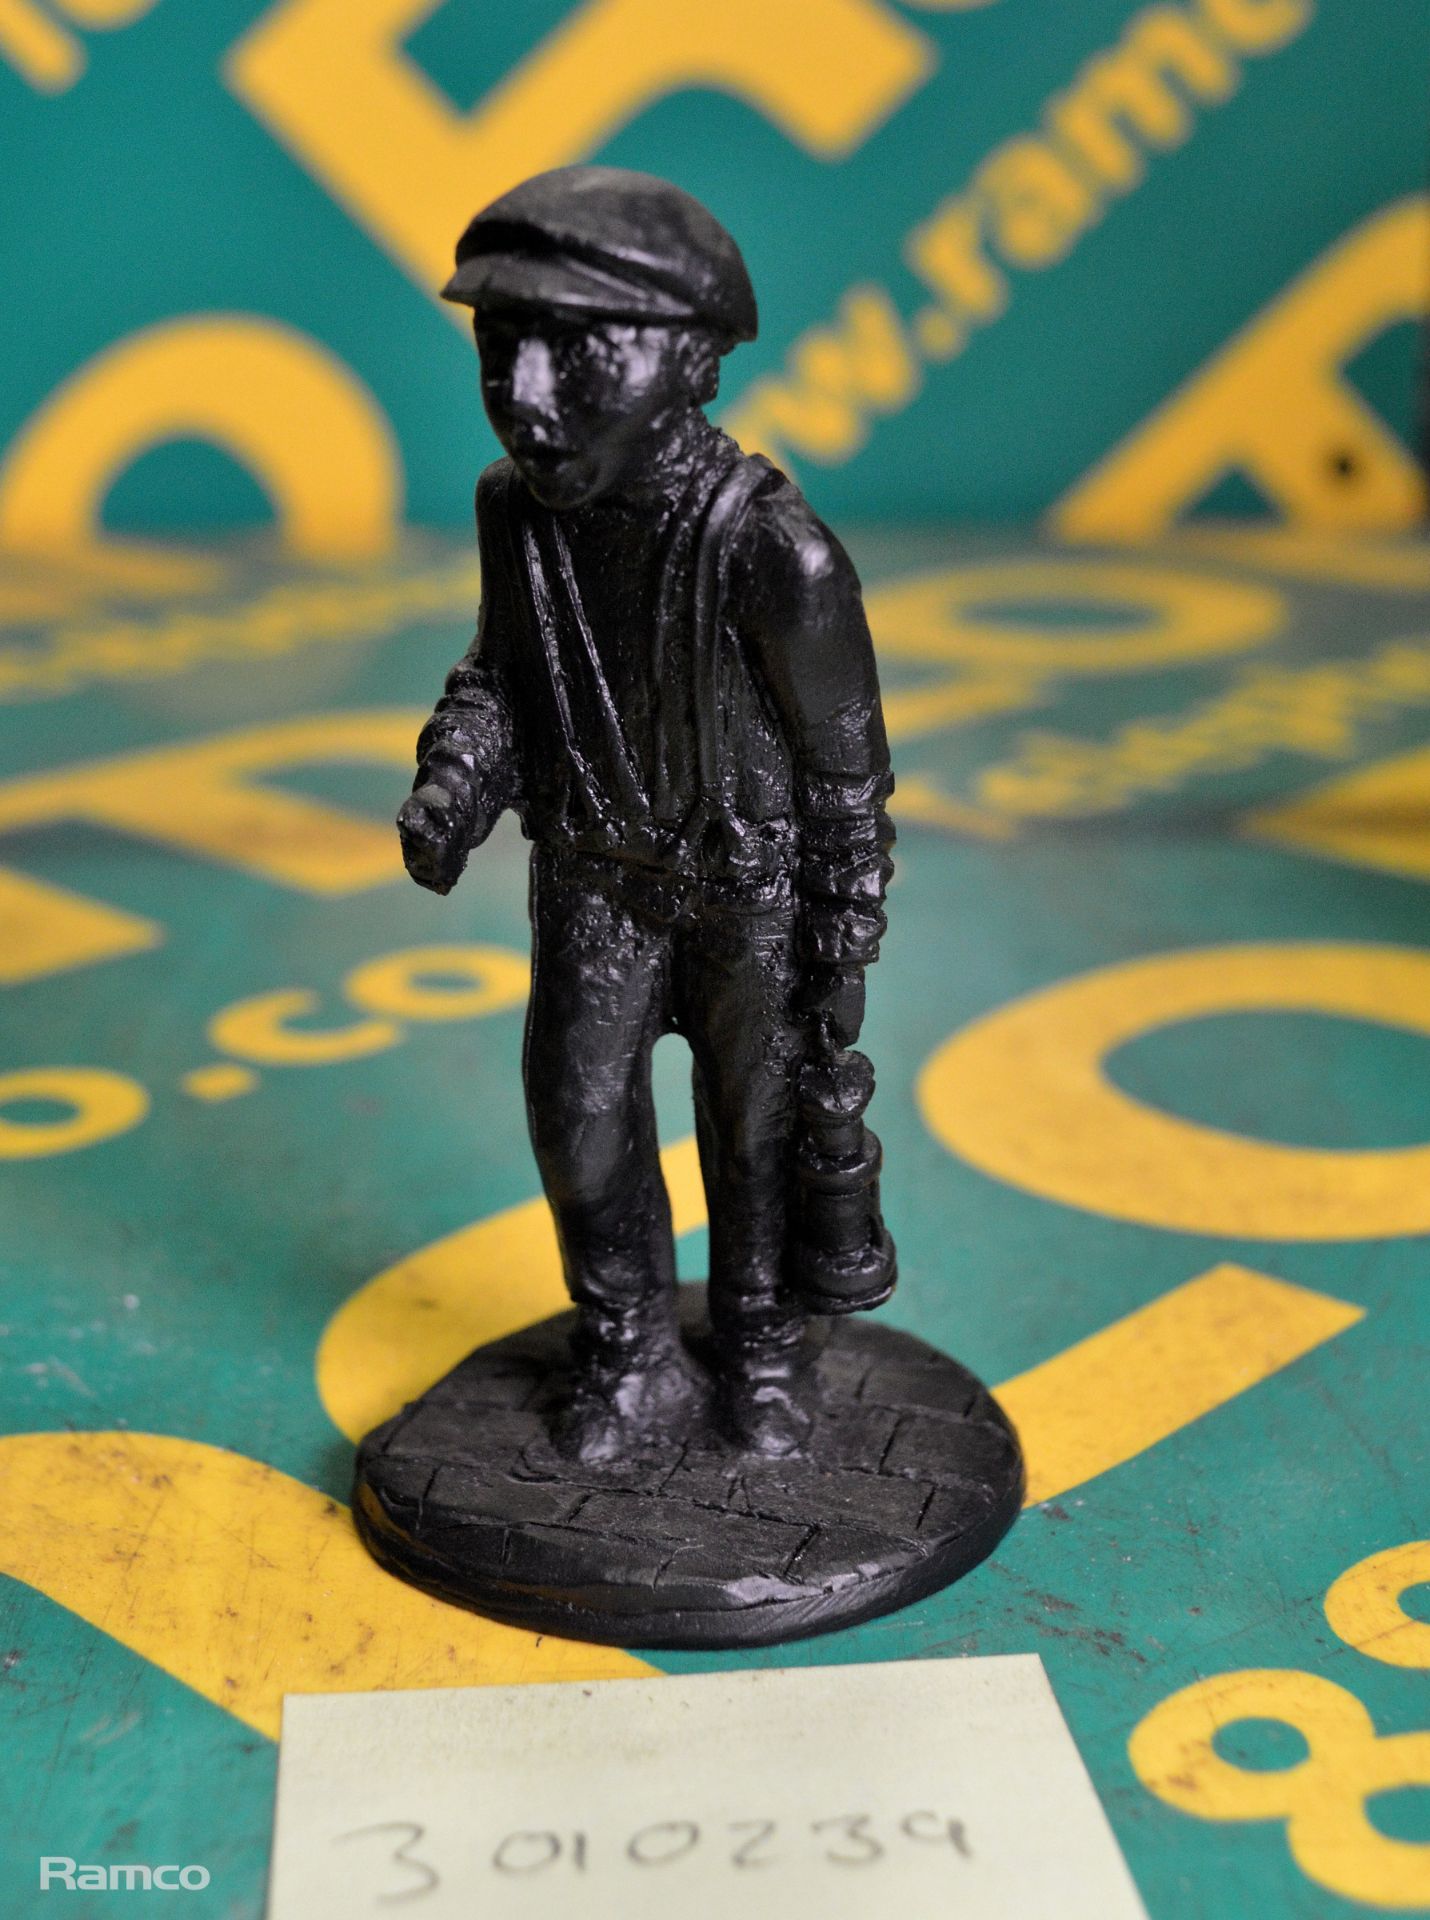 Classique coal miner figure ornament